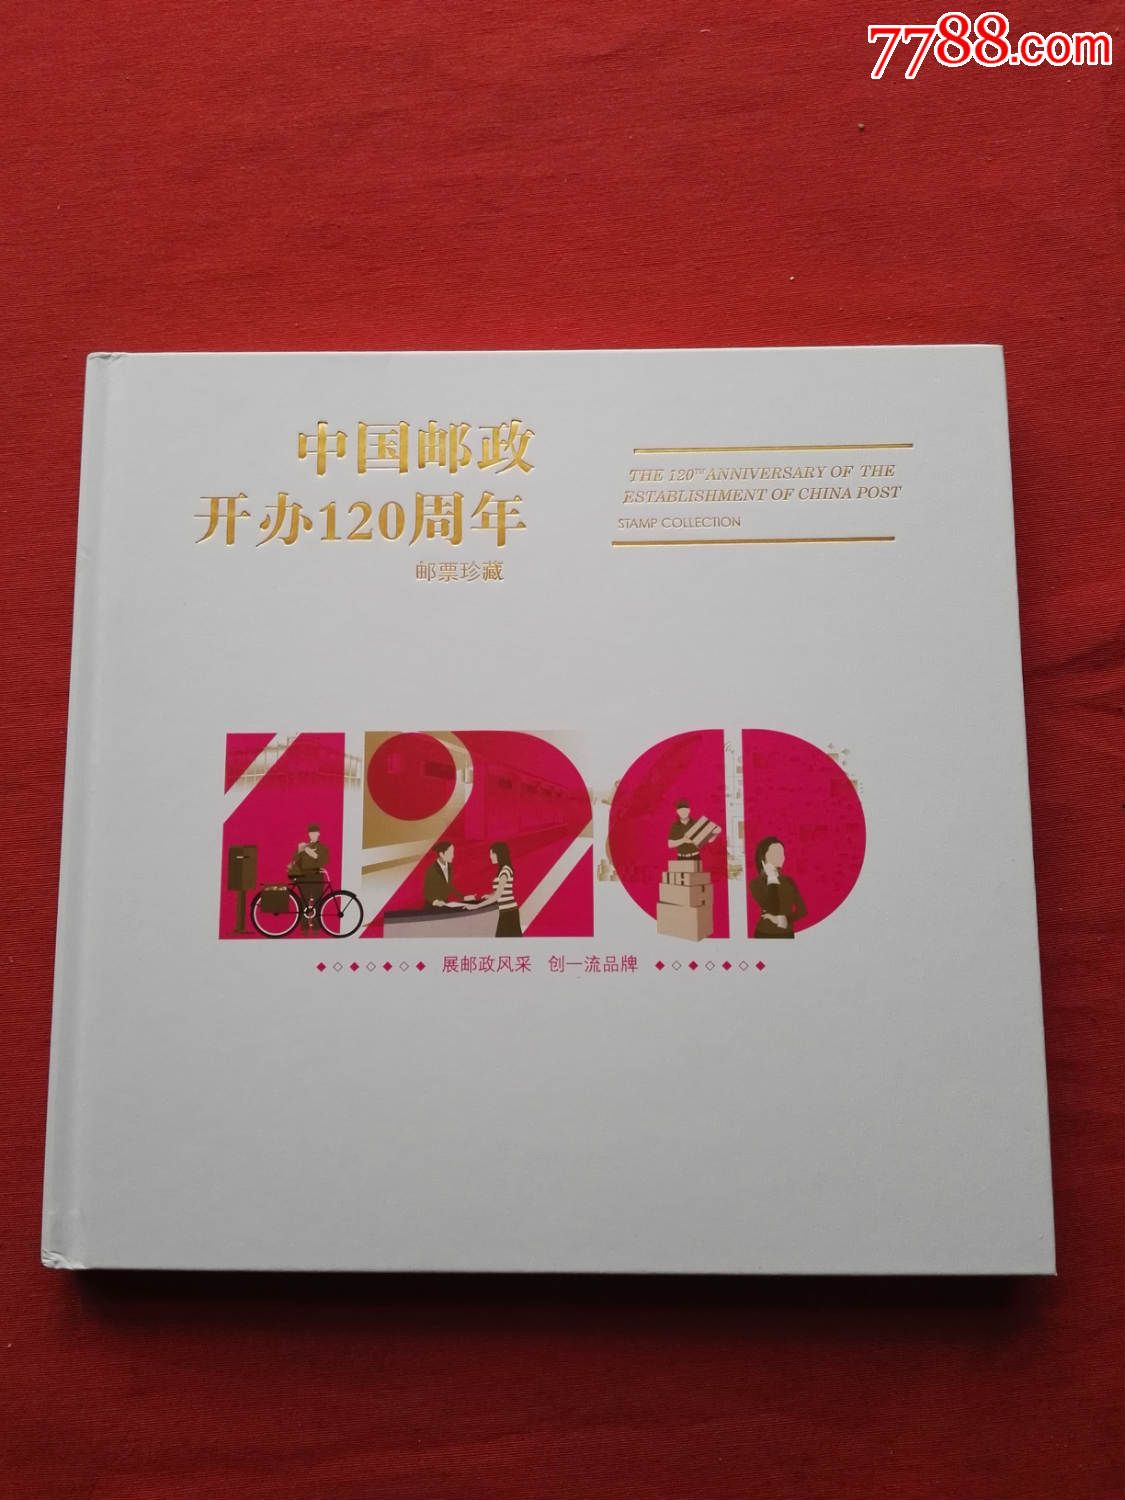 大版邮册:2016-4中国邮政开办120周年纪念大版册